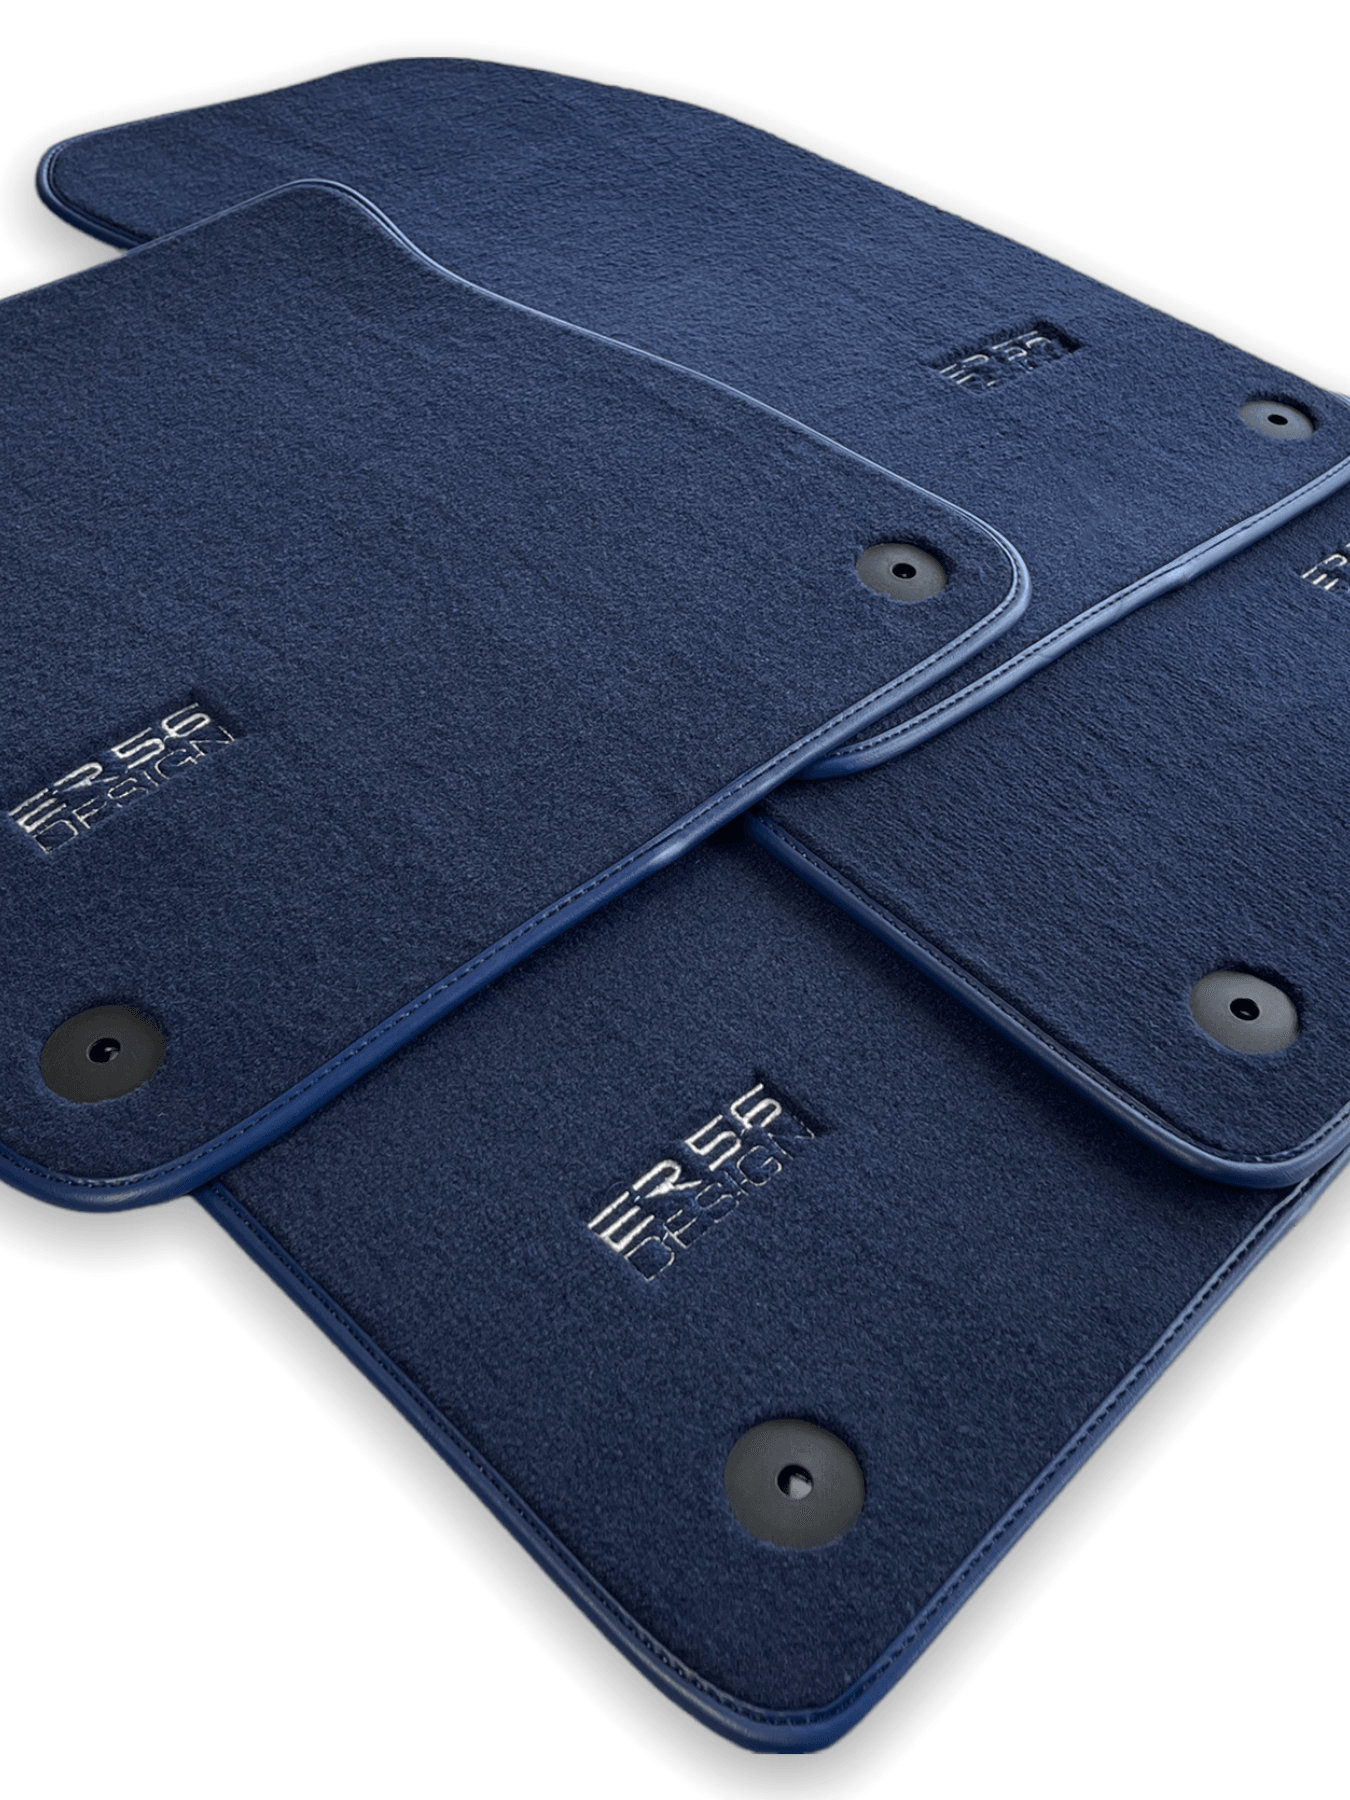 Dark Blue Floor Mats for Audi Q7 4L (2006-2015) | ER56 Design